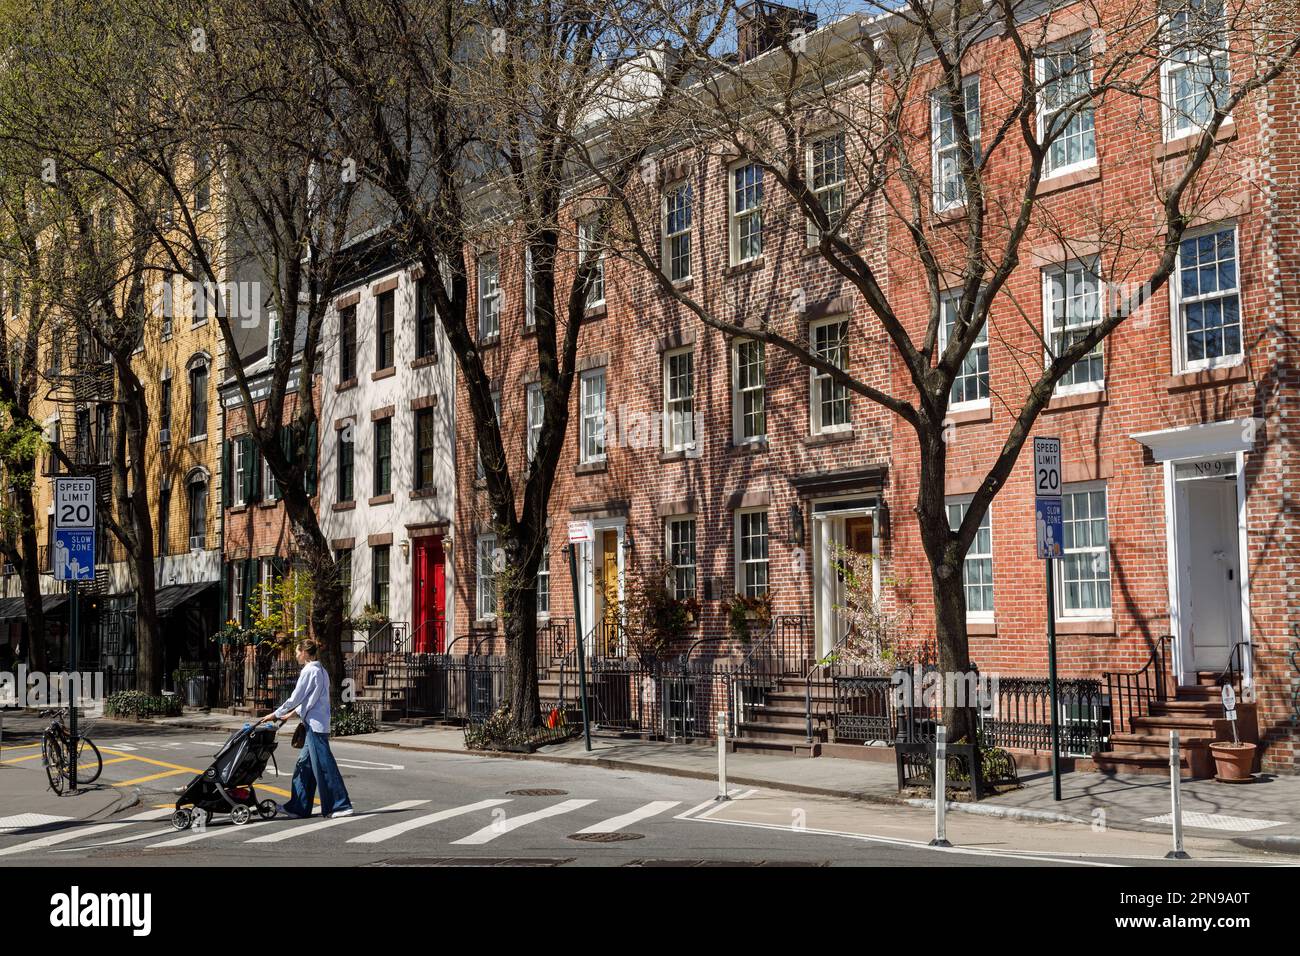 Commerce Street alias Cherry Lane, malerische Backsteinhäuser in Greenwich Village, New York City. Stockfoto